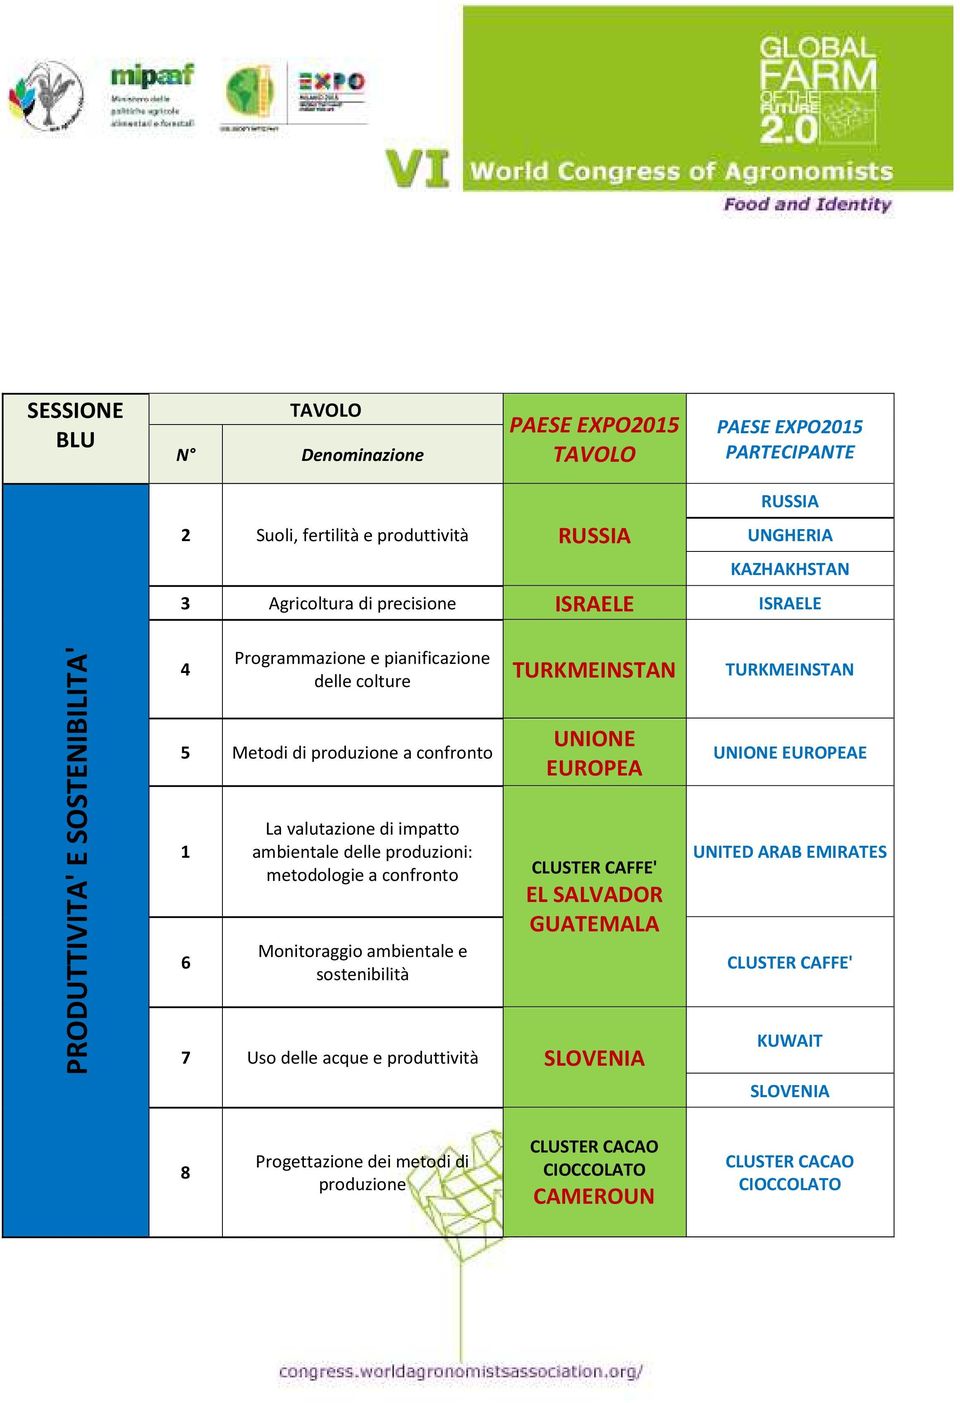 valutazione di impatto ambientale delle produzioni: metodologie a confronto Monitoraggio ambientale e sostenibilità UNIONE EUROPEA EL SALVADOR